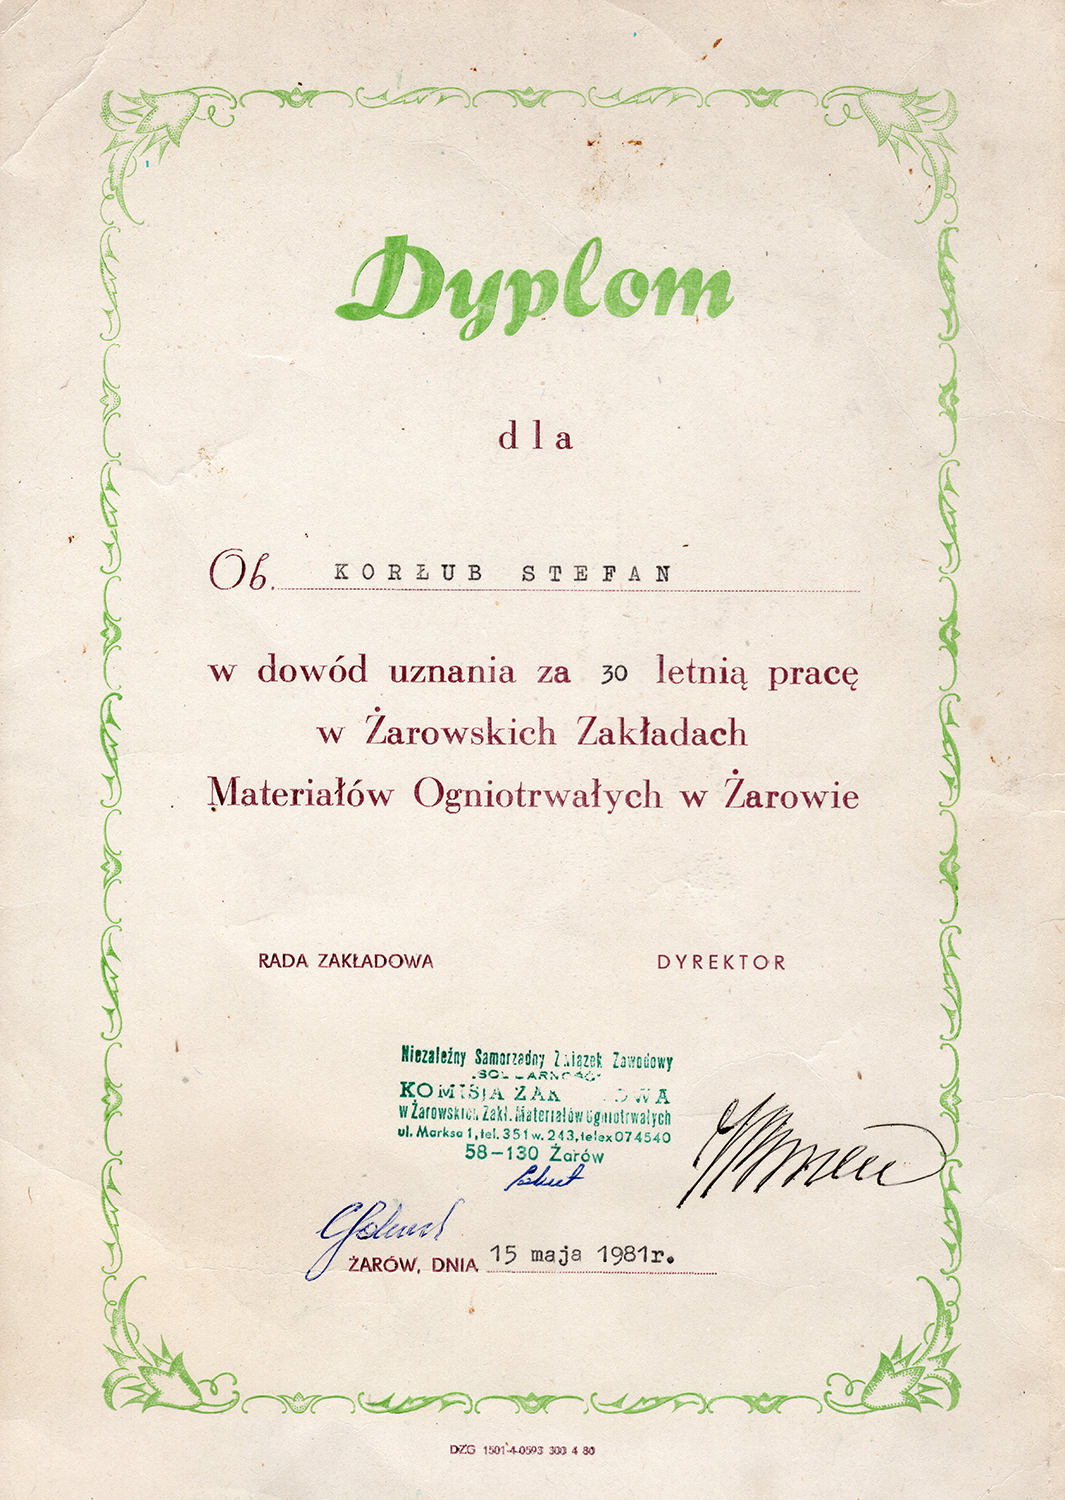 Dyplomy – Korłub 1973-1989 (7)